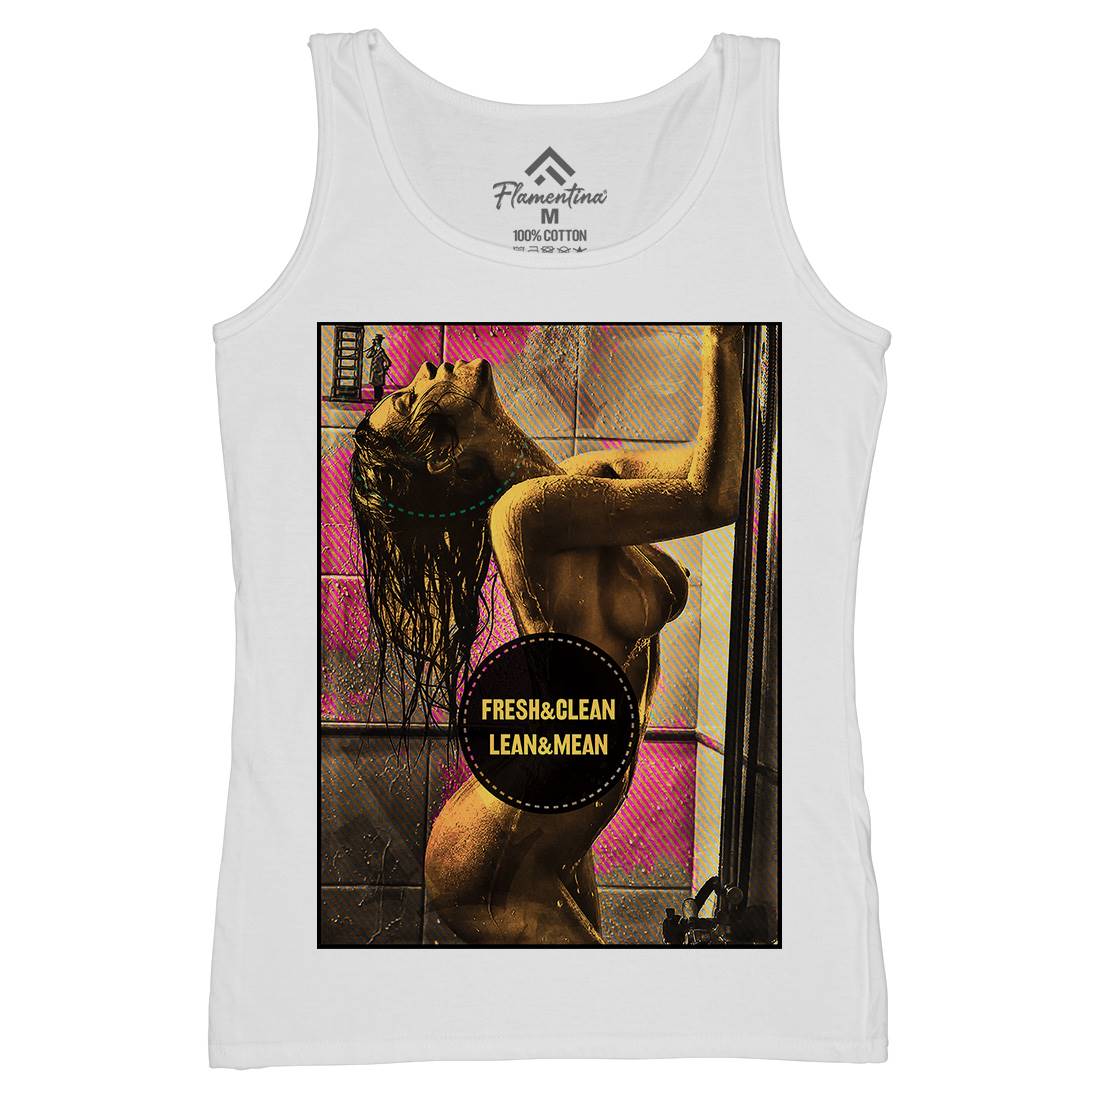 Shower Girl Womens Organic Tank Top Vest Art A908